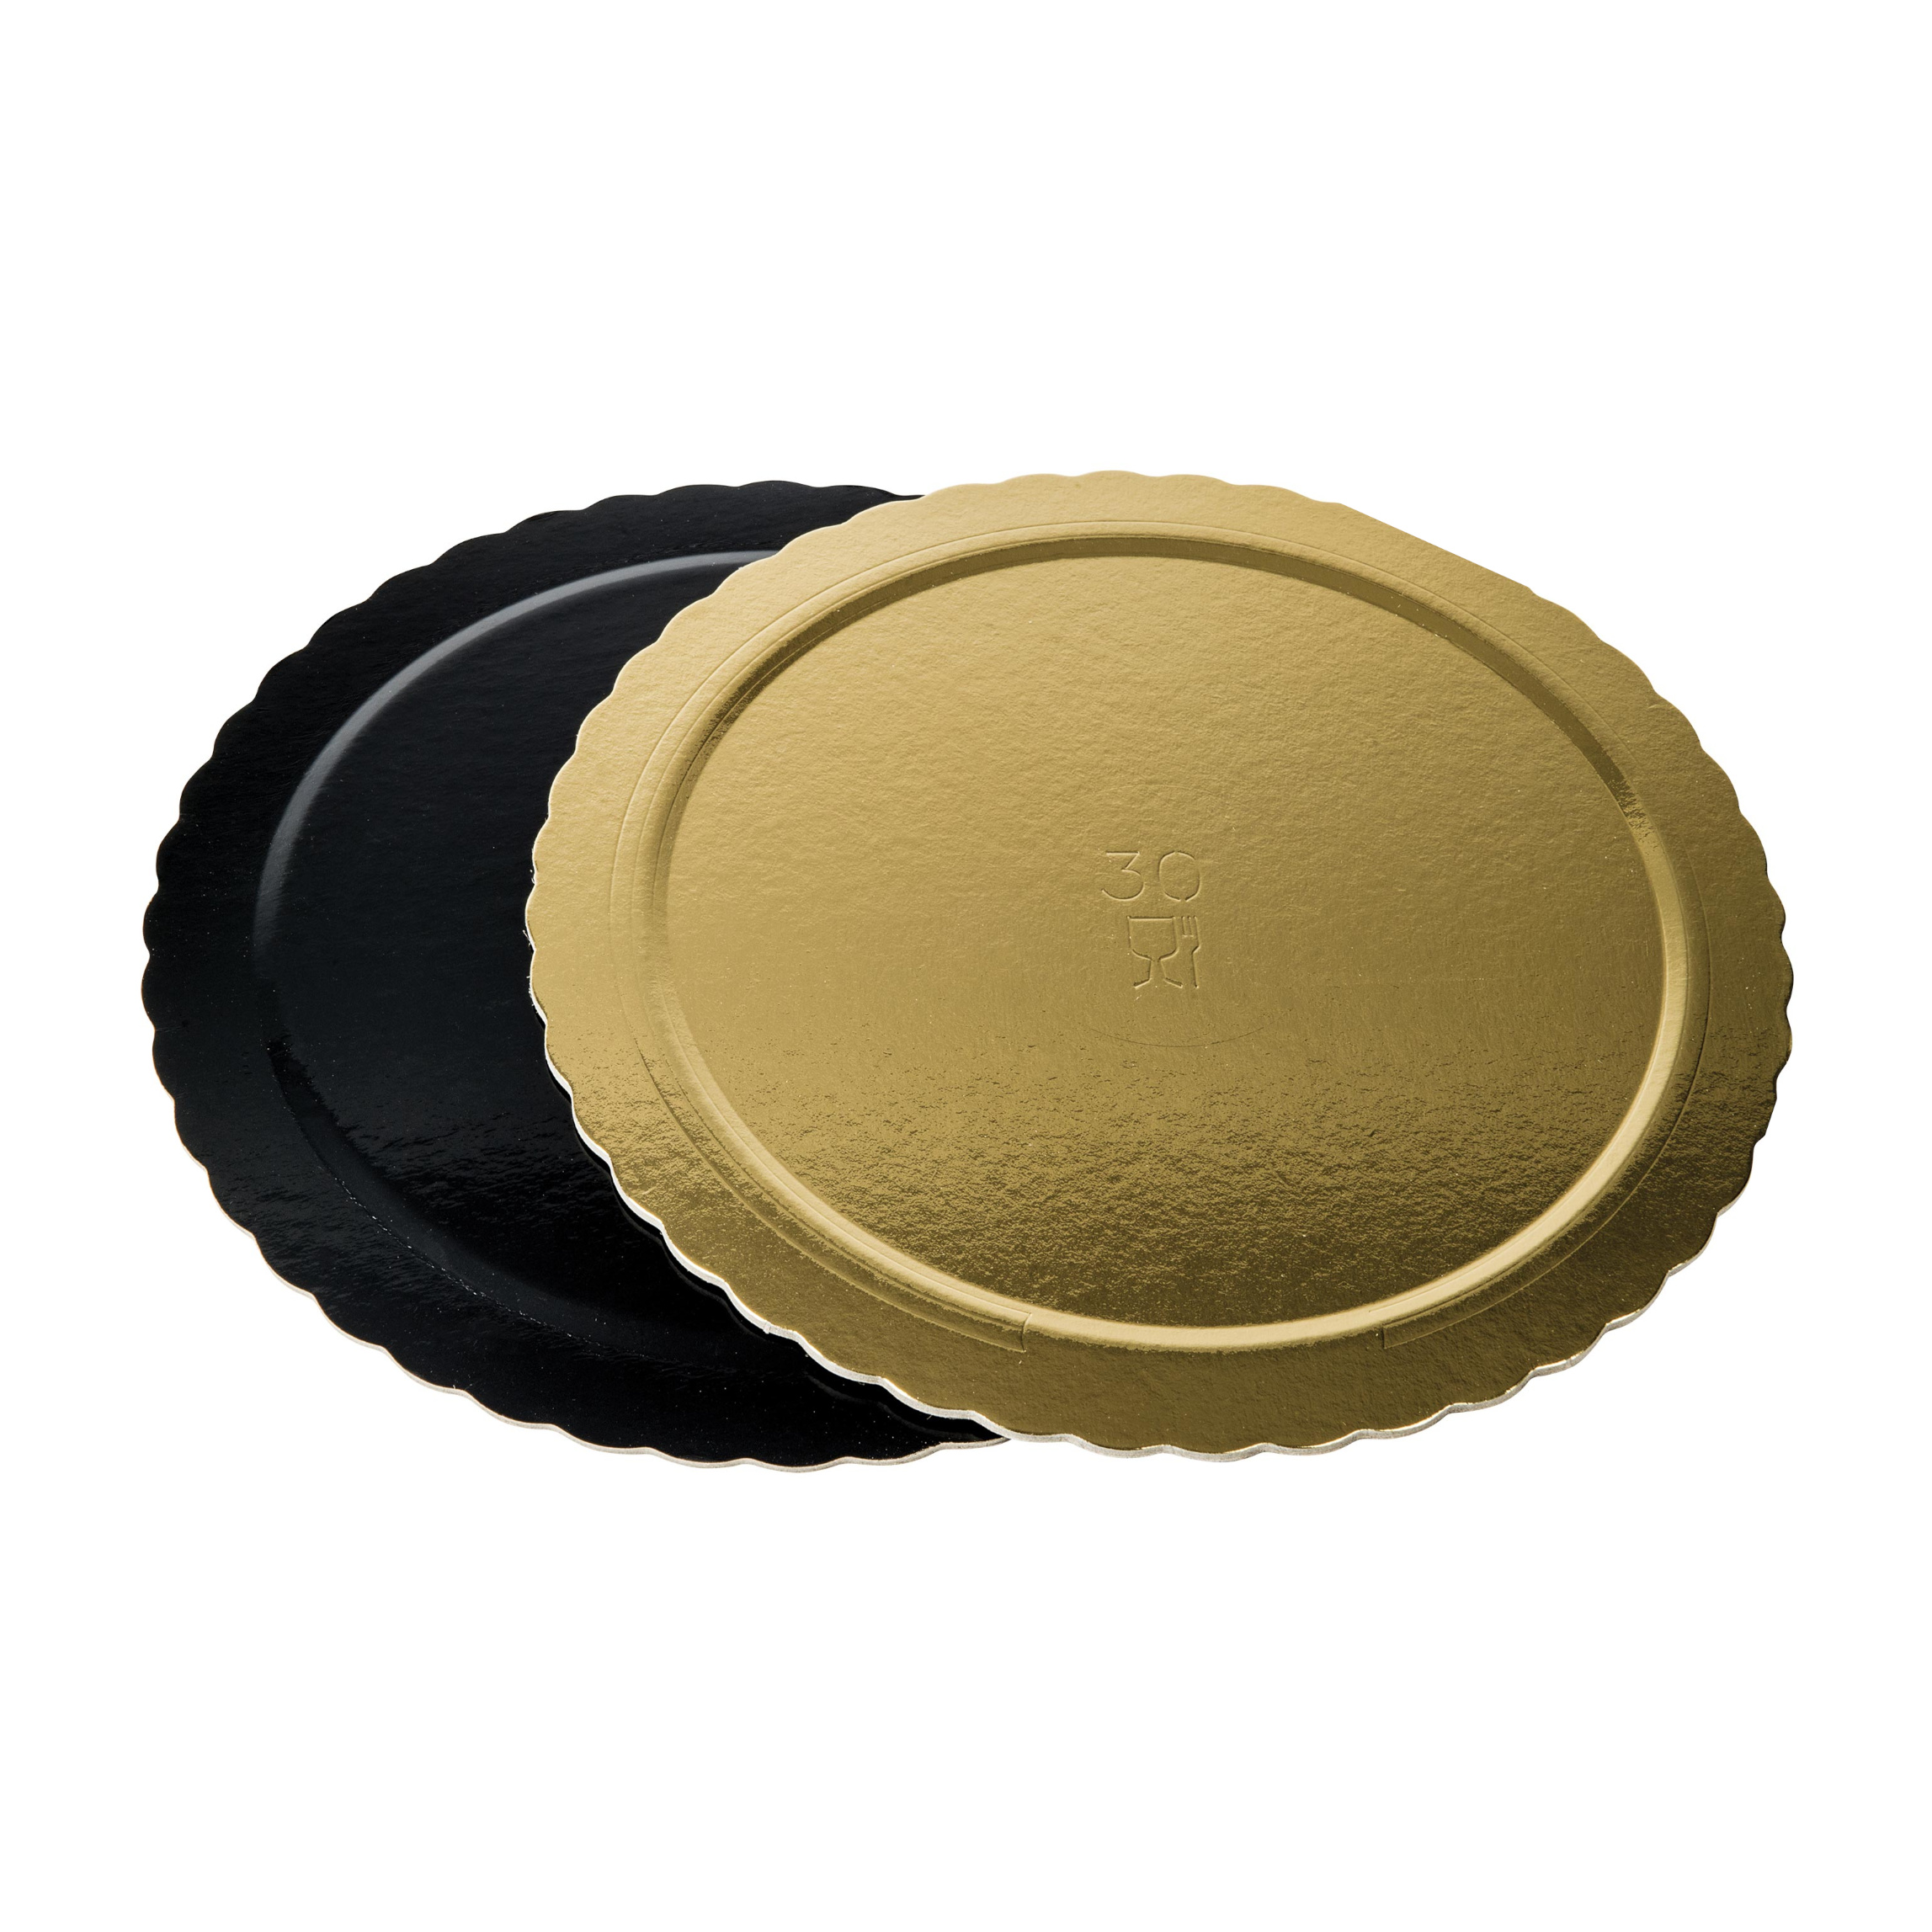 Dischi sottotorta kappati oro/nero 16cm pacchetto da 10kg